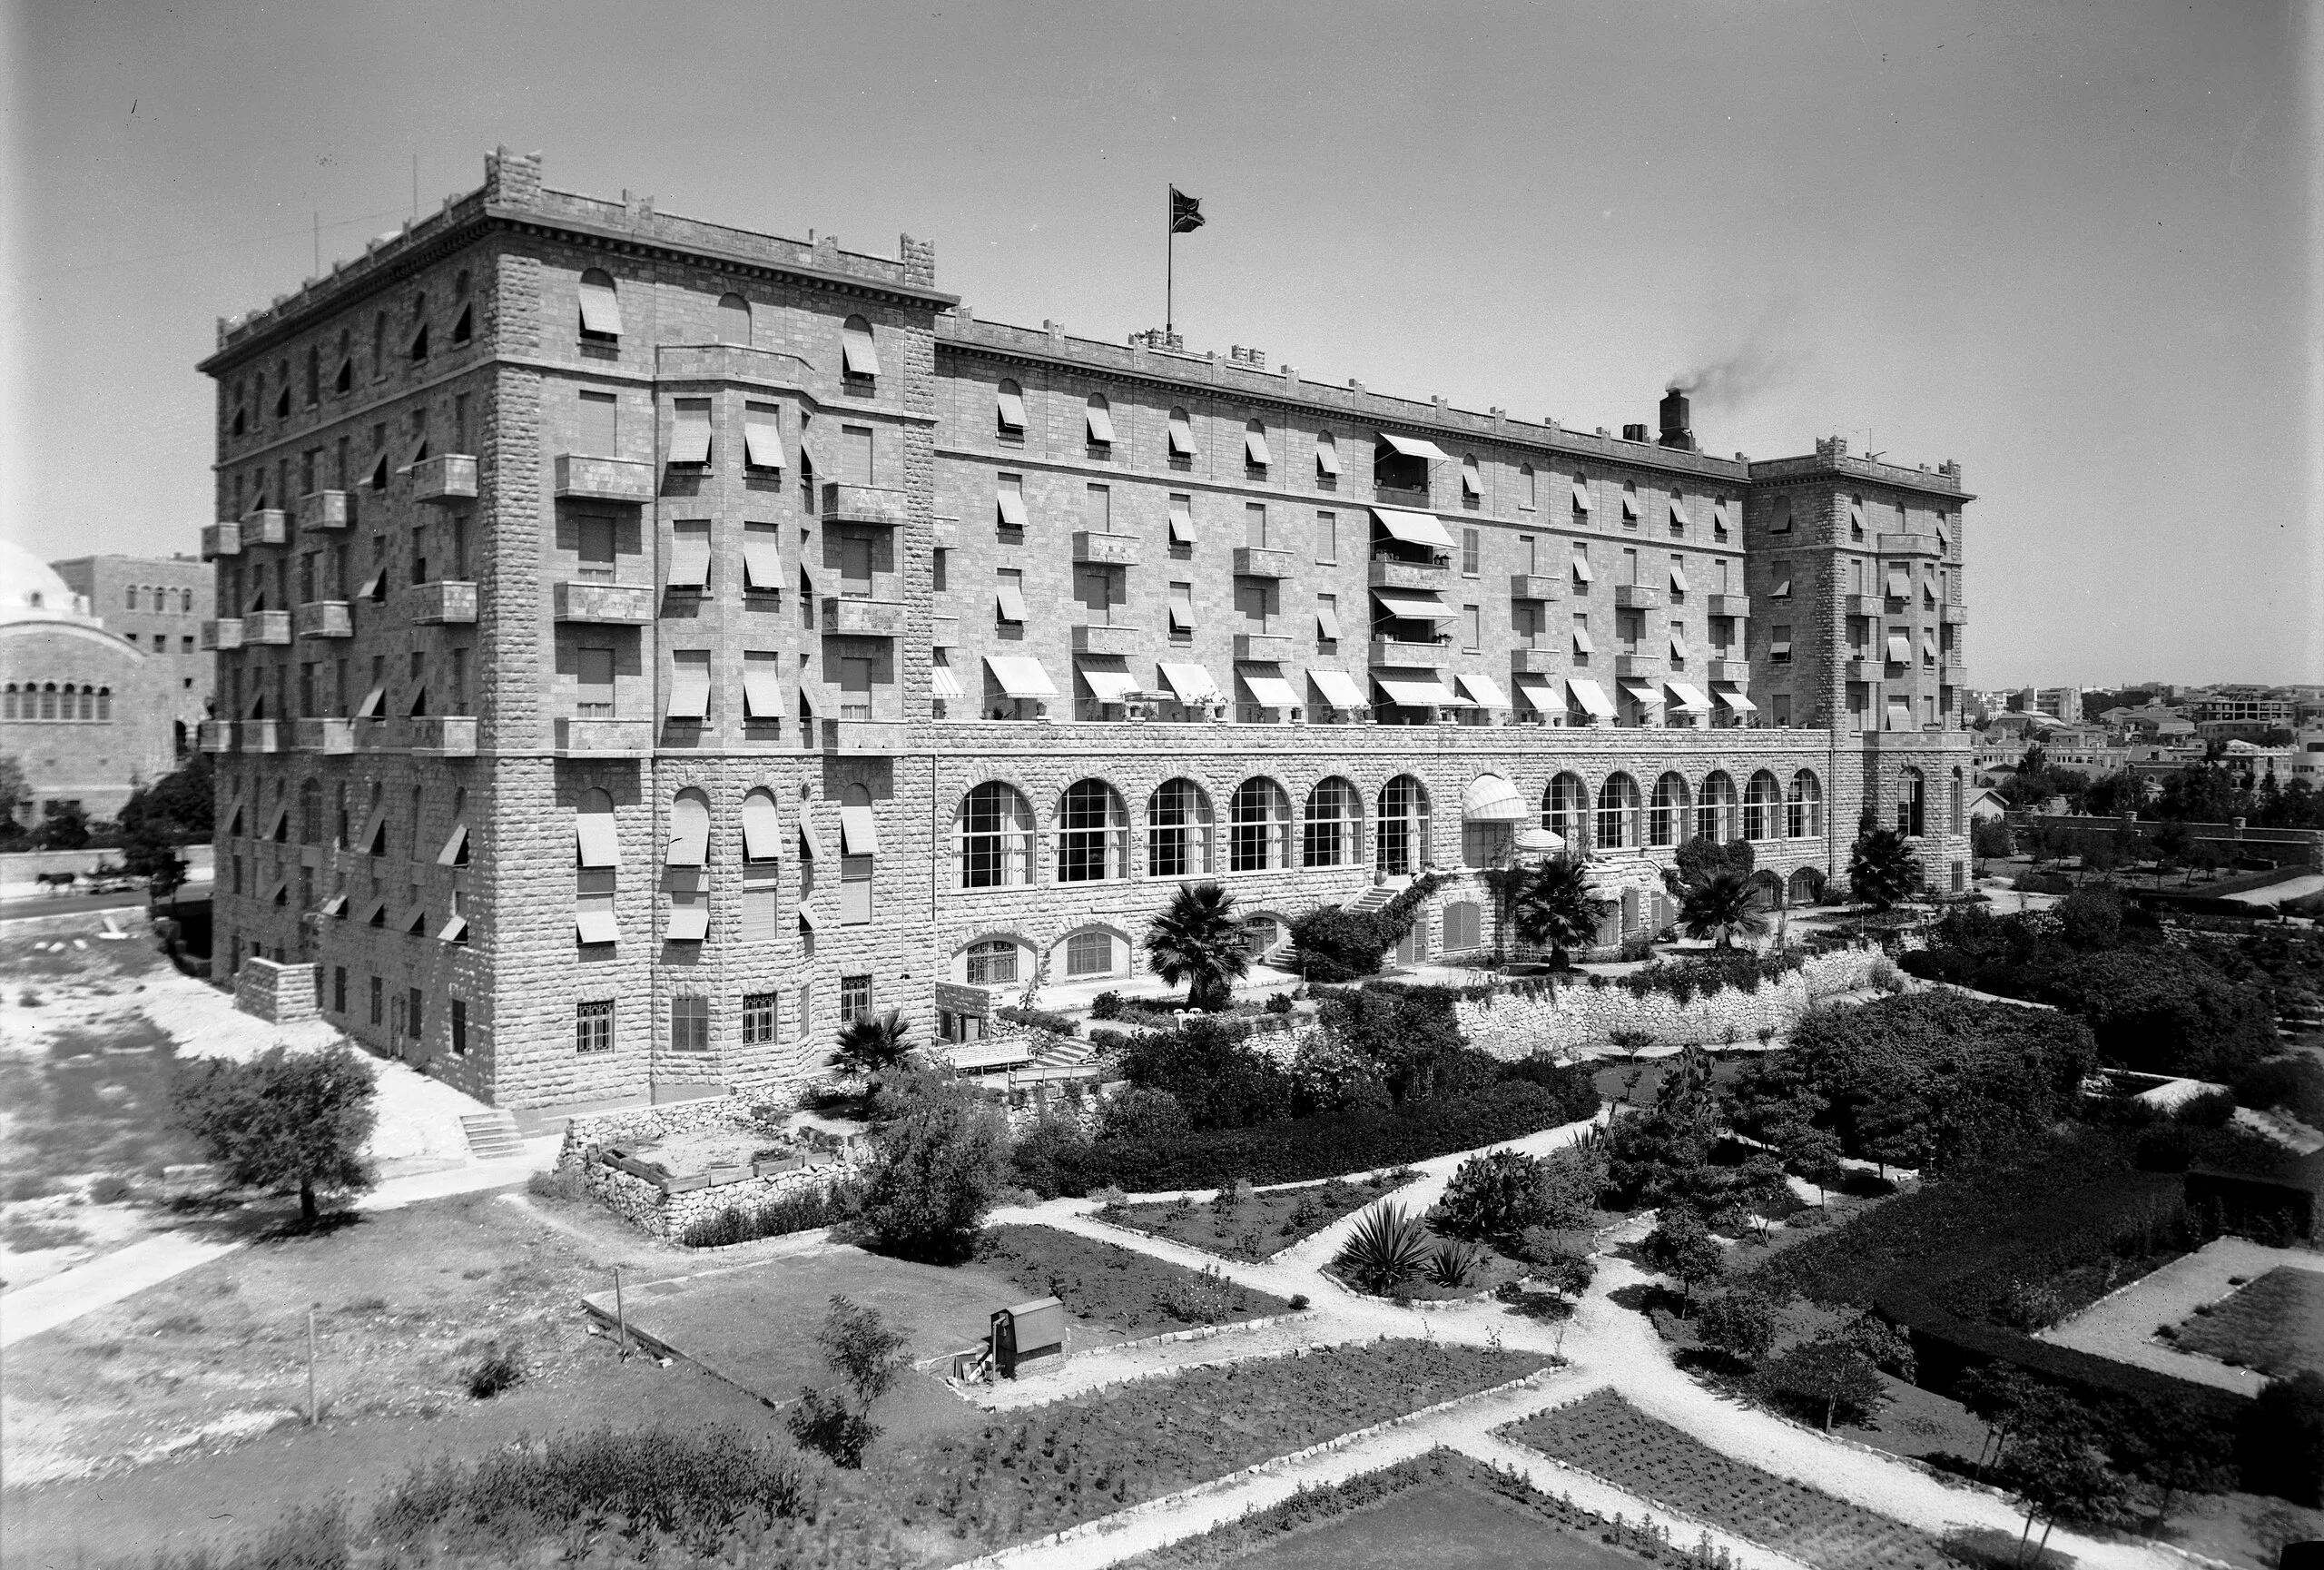 L'Hotel King David, fotografiat entre 1934 i 1939